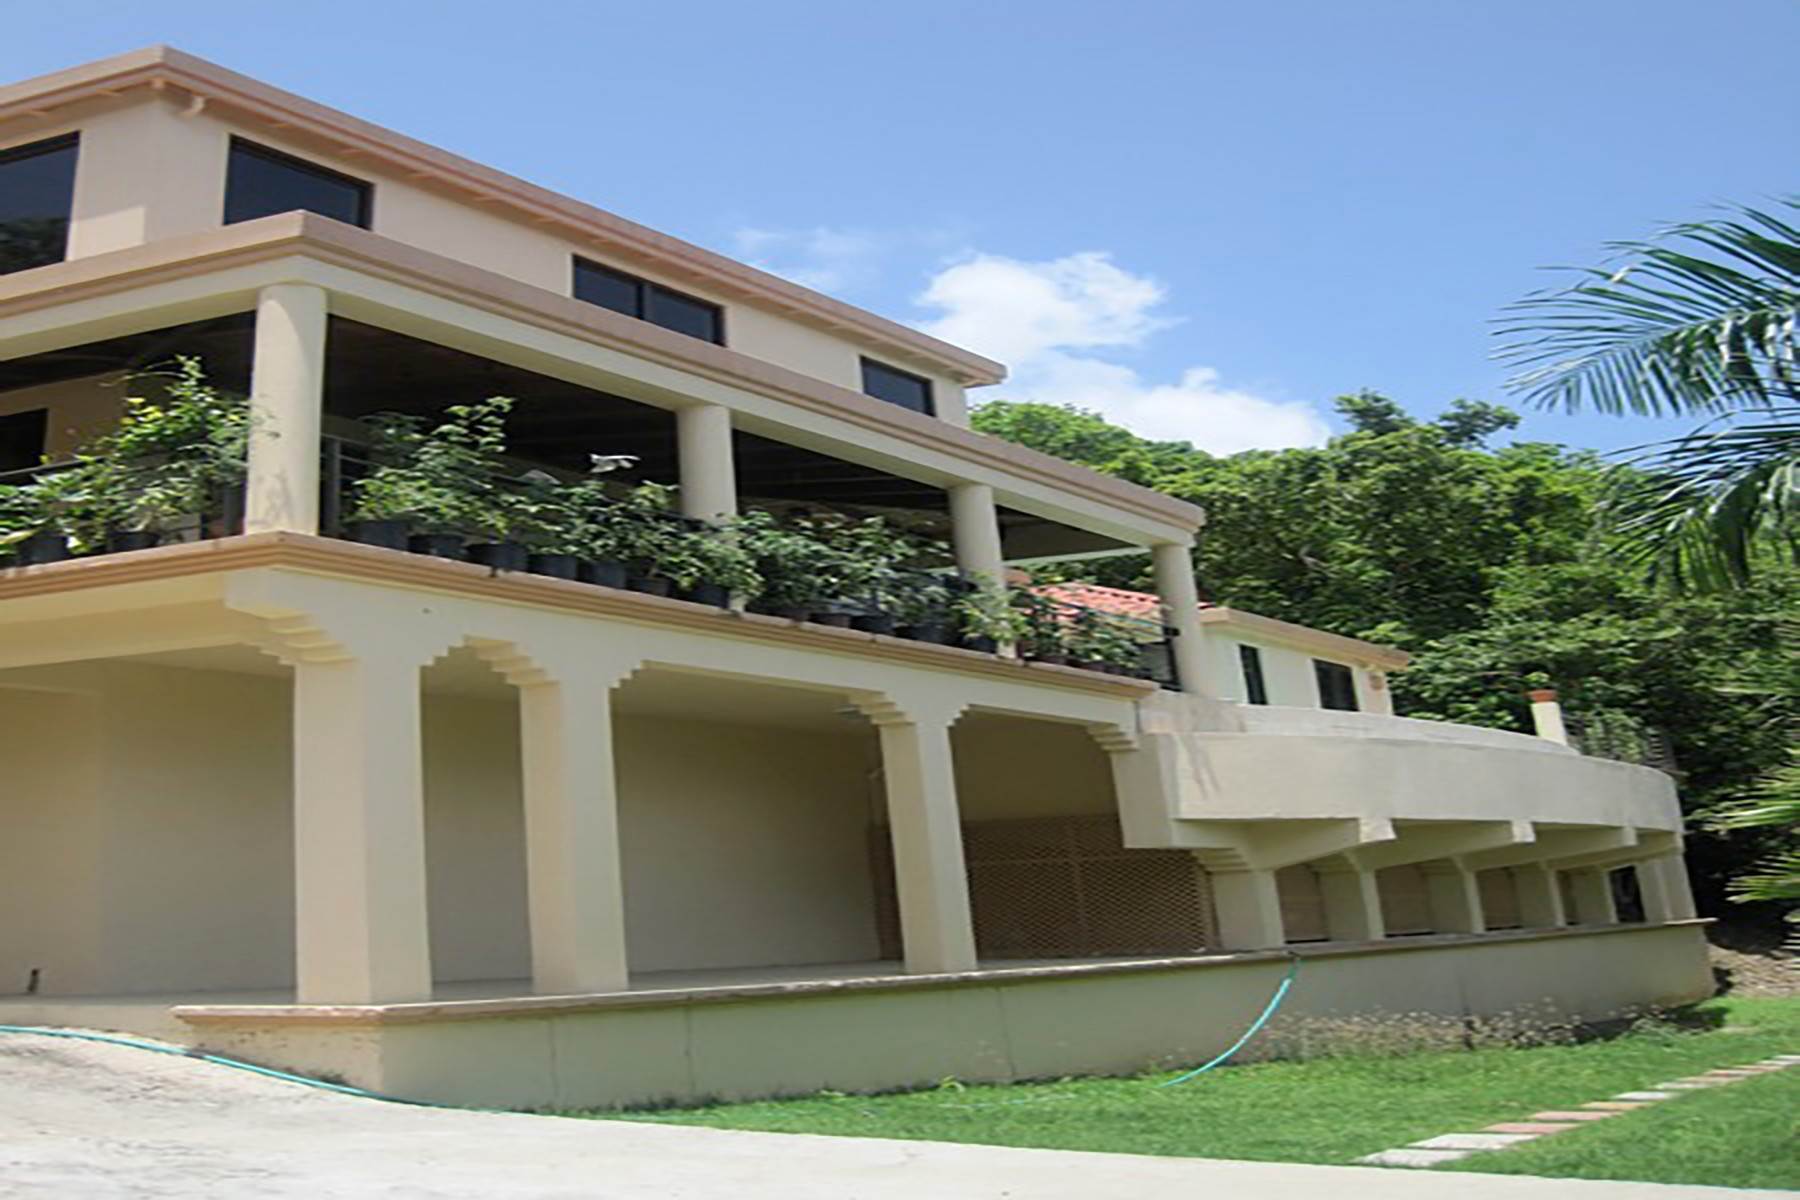 2. Single Family Homes für Verkauf beim Other Tortola, Tortola Britische Jungferninseln